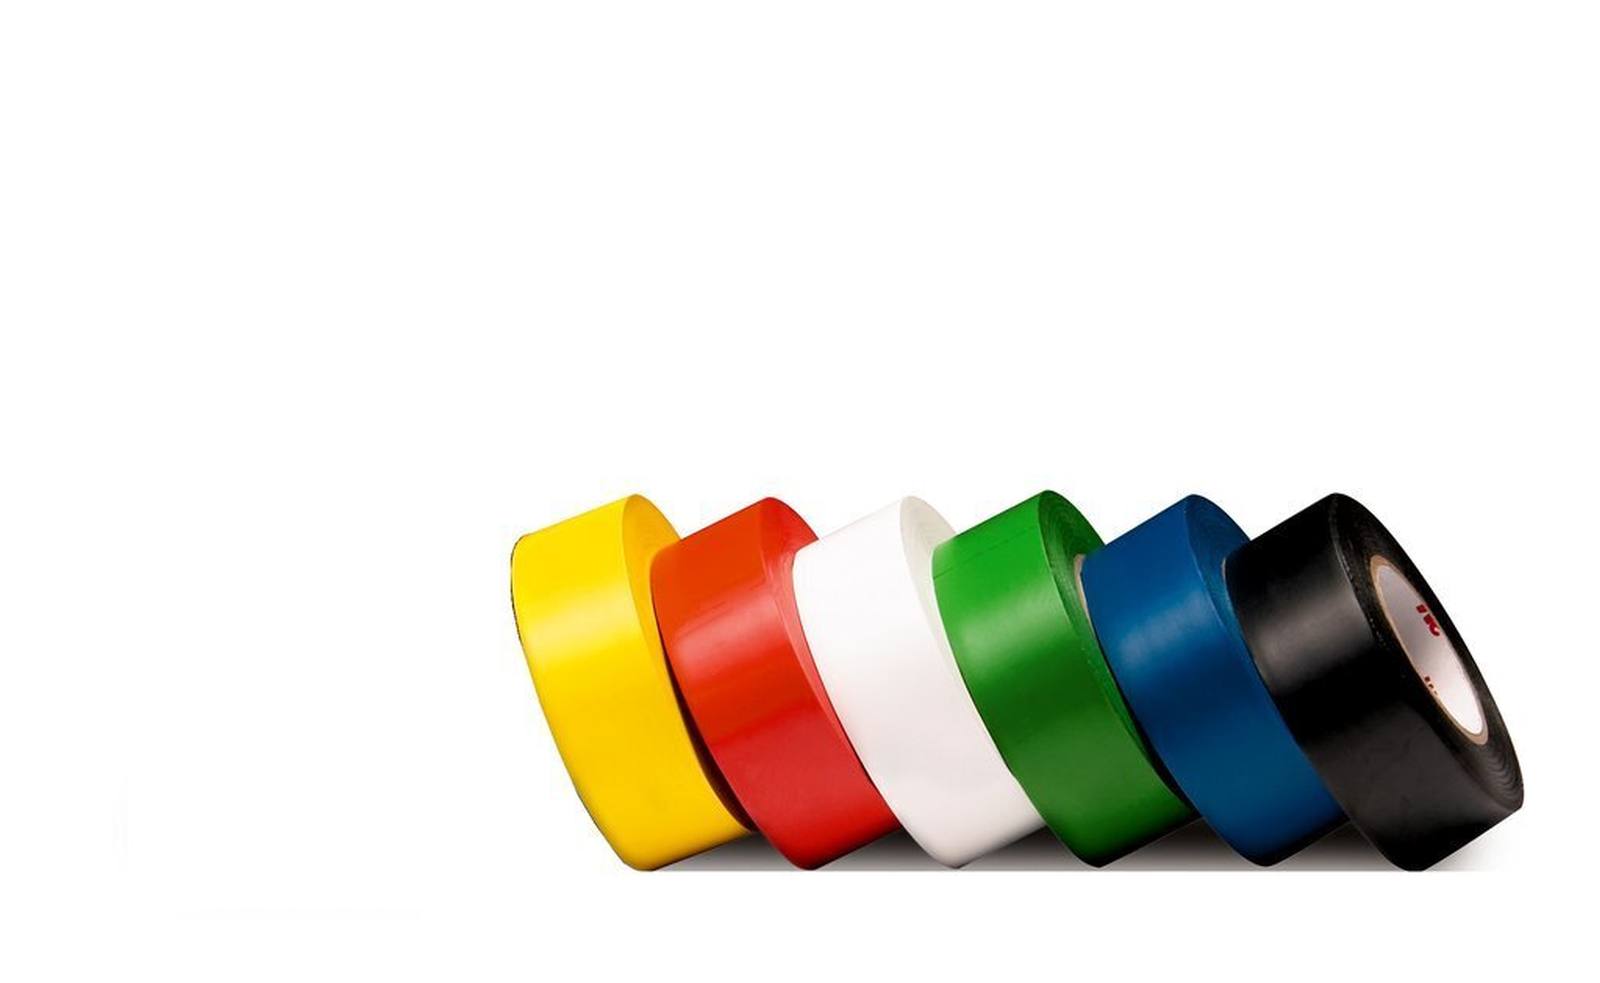 3M PVC kleefband voor alle doeleinden 764, groen, 50 mm x 33 m, per stuk verpakt in handige verpakking